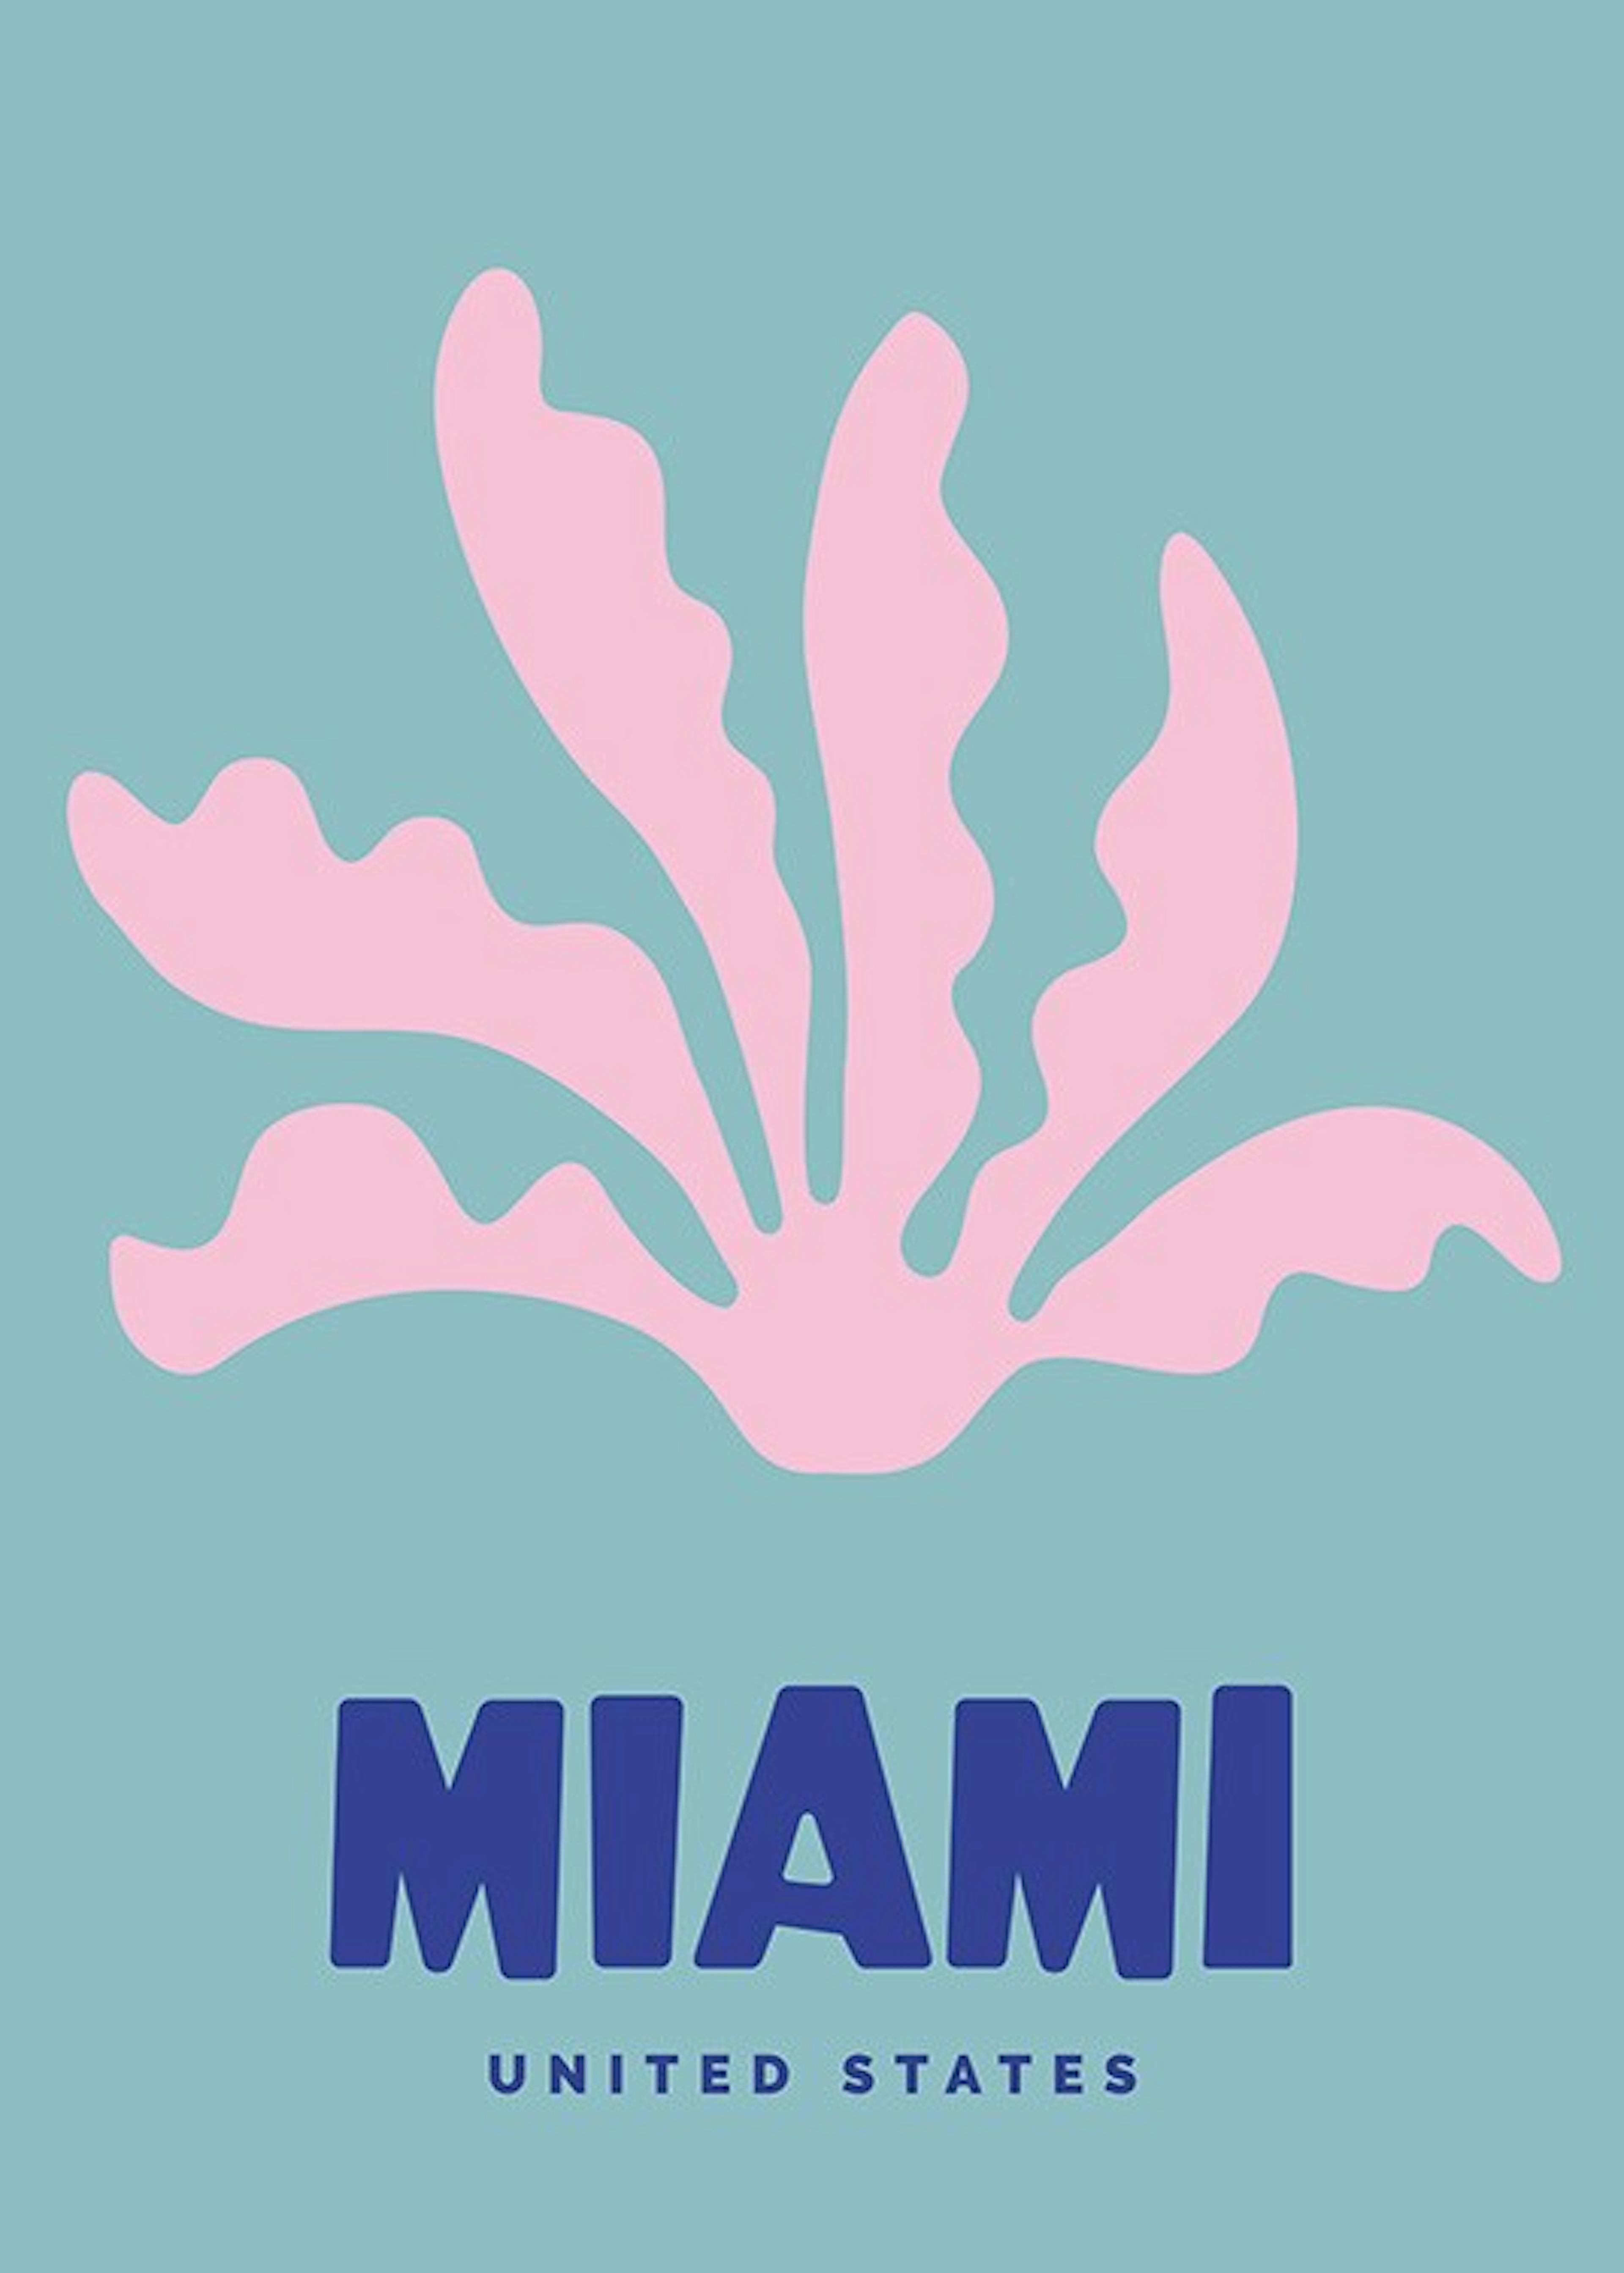 Graphic Miami Print